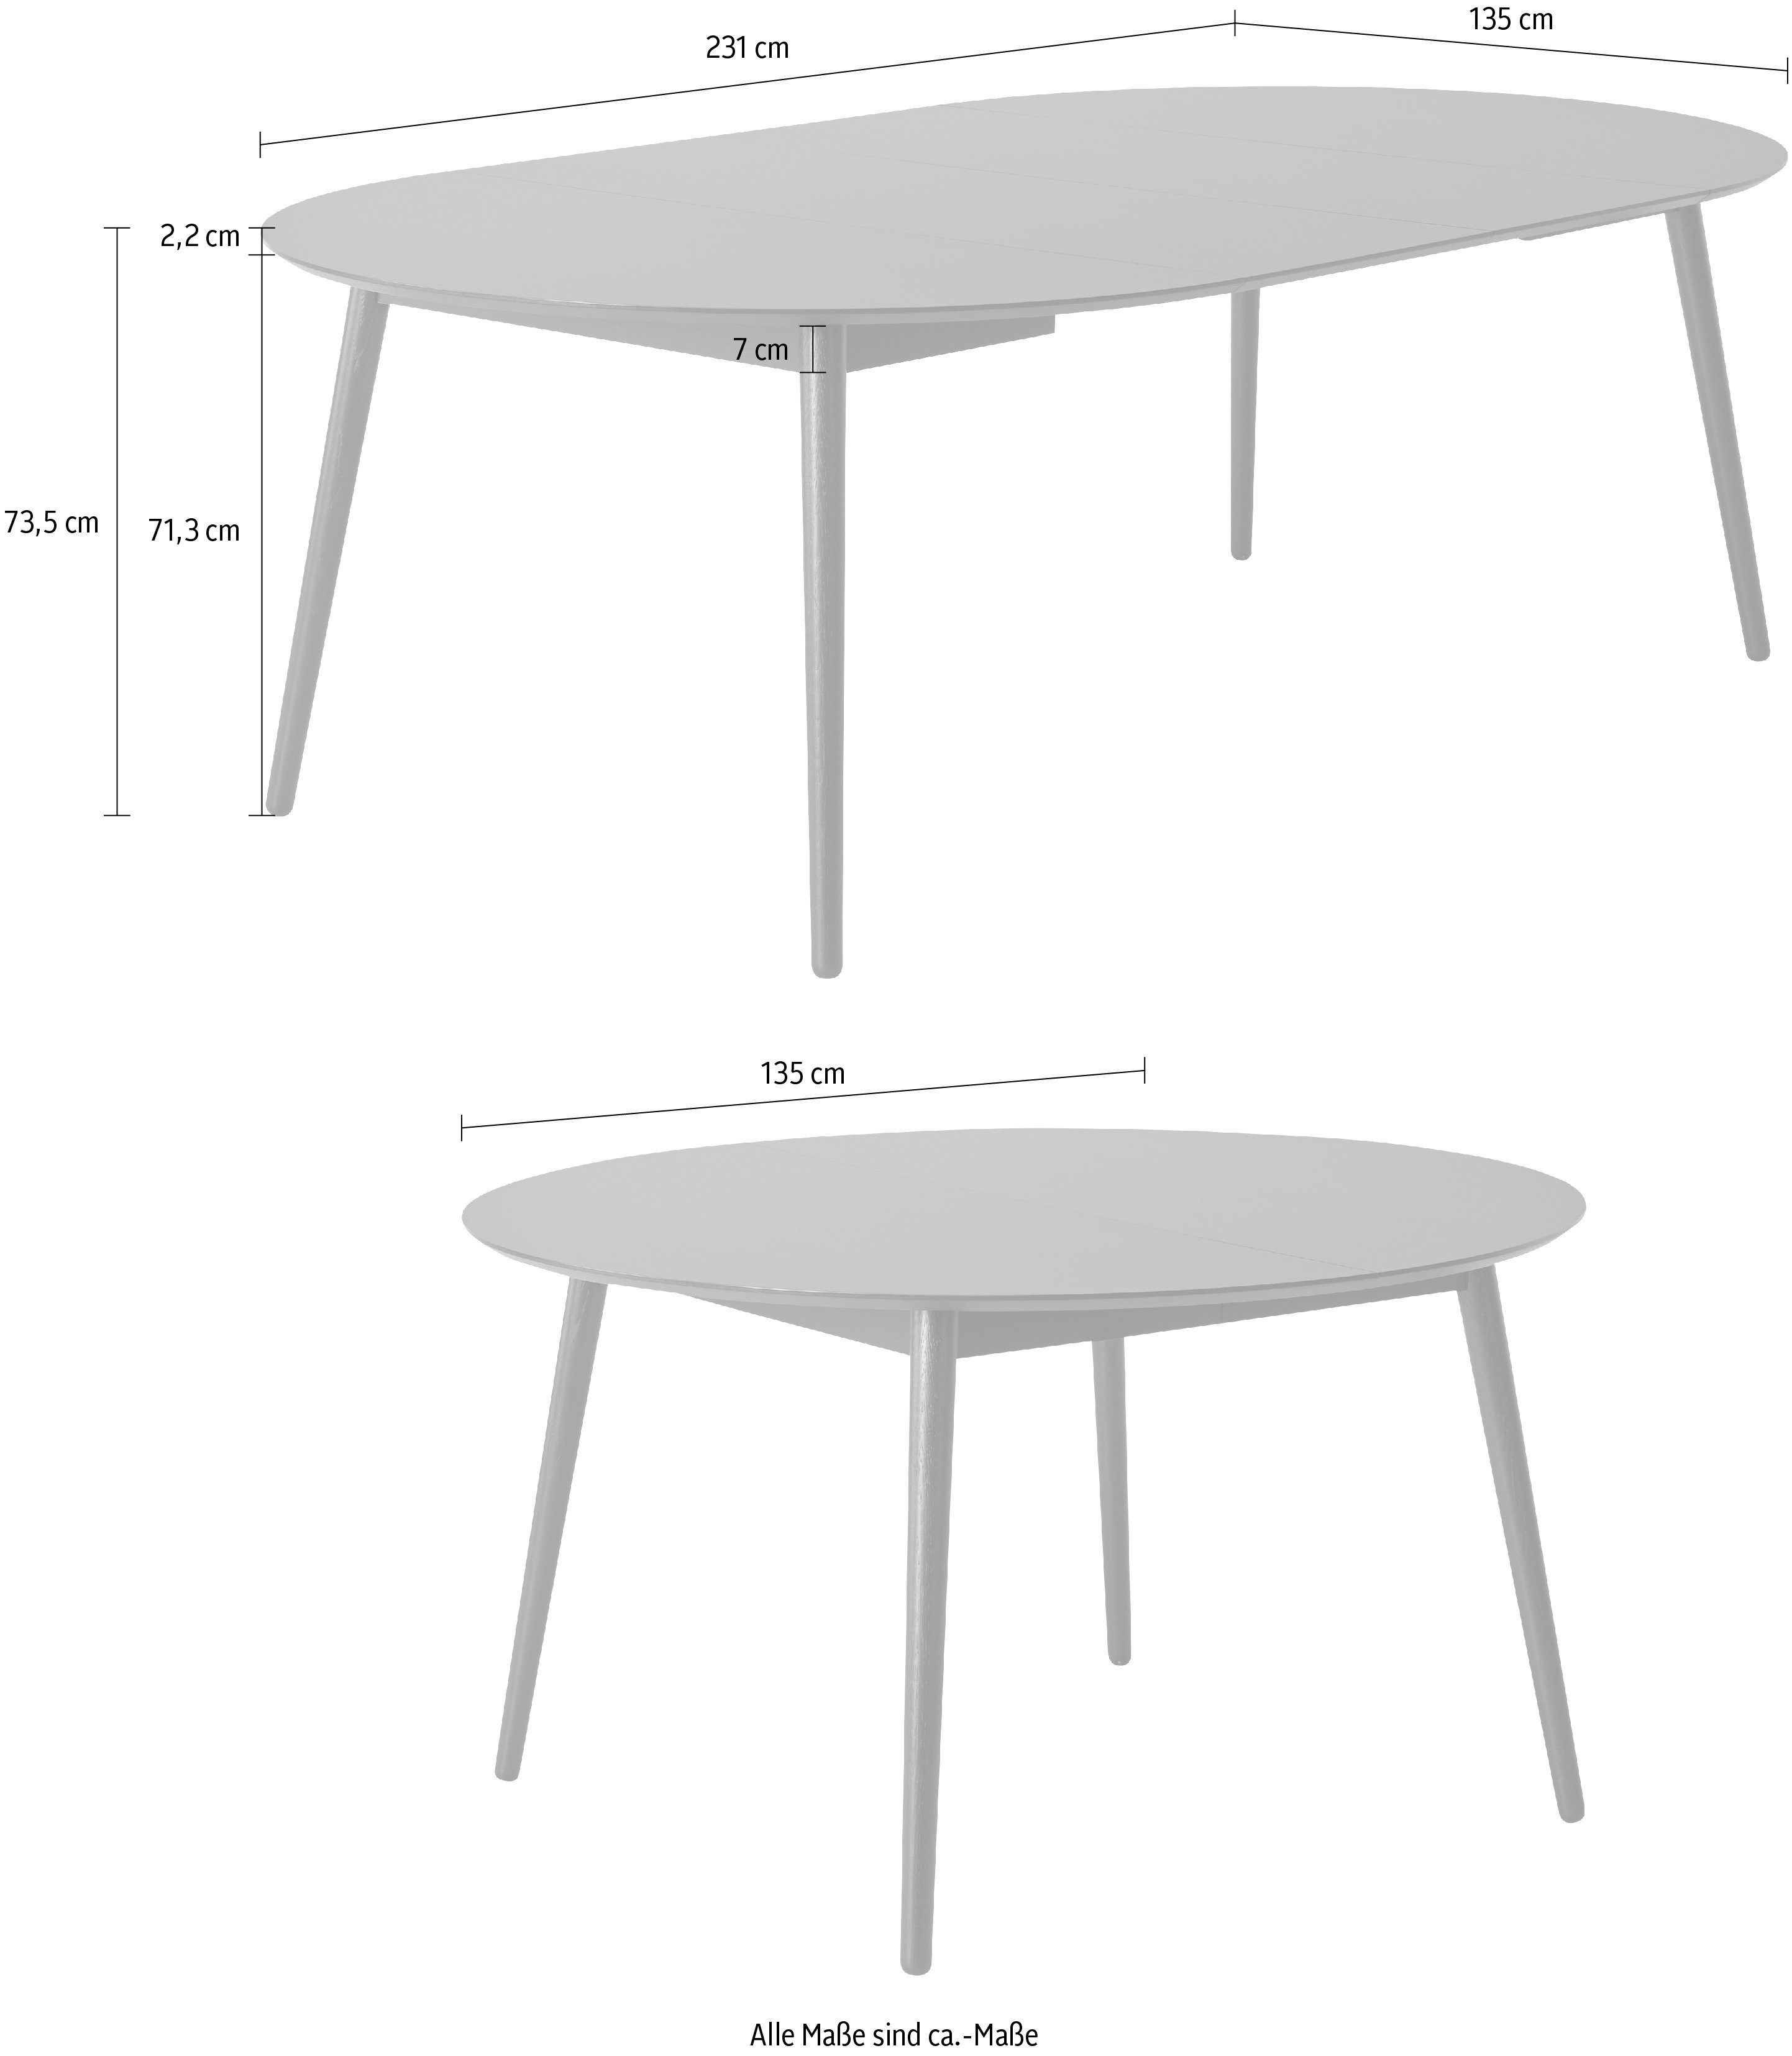 Hammel Furniture Esstisch by runde aus Tischplatte Hammel, Ø135(231) Massivholzgestell Meza cm, MDF/Laminat, Naturfarben